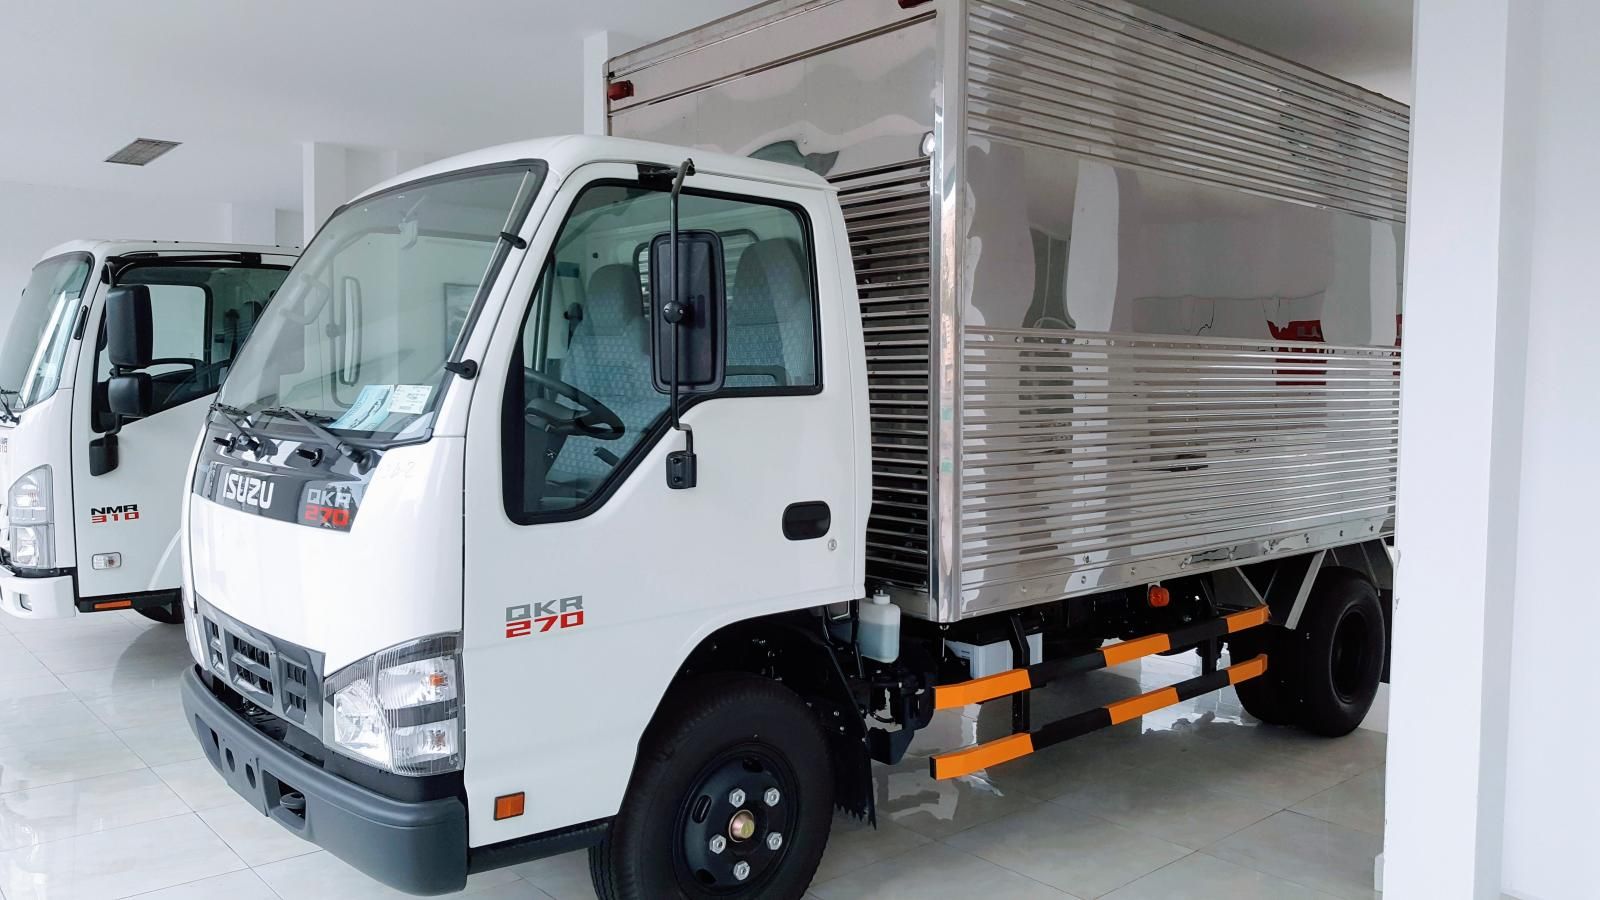 Isuzu QKR 2019 - Isuzu An Lạc - Bán xe chính hãng Isuzu QKR 1,9 tấn - Có sẵn xe - Giao ngay